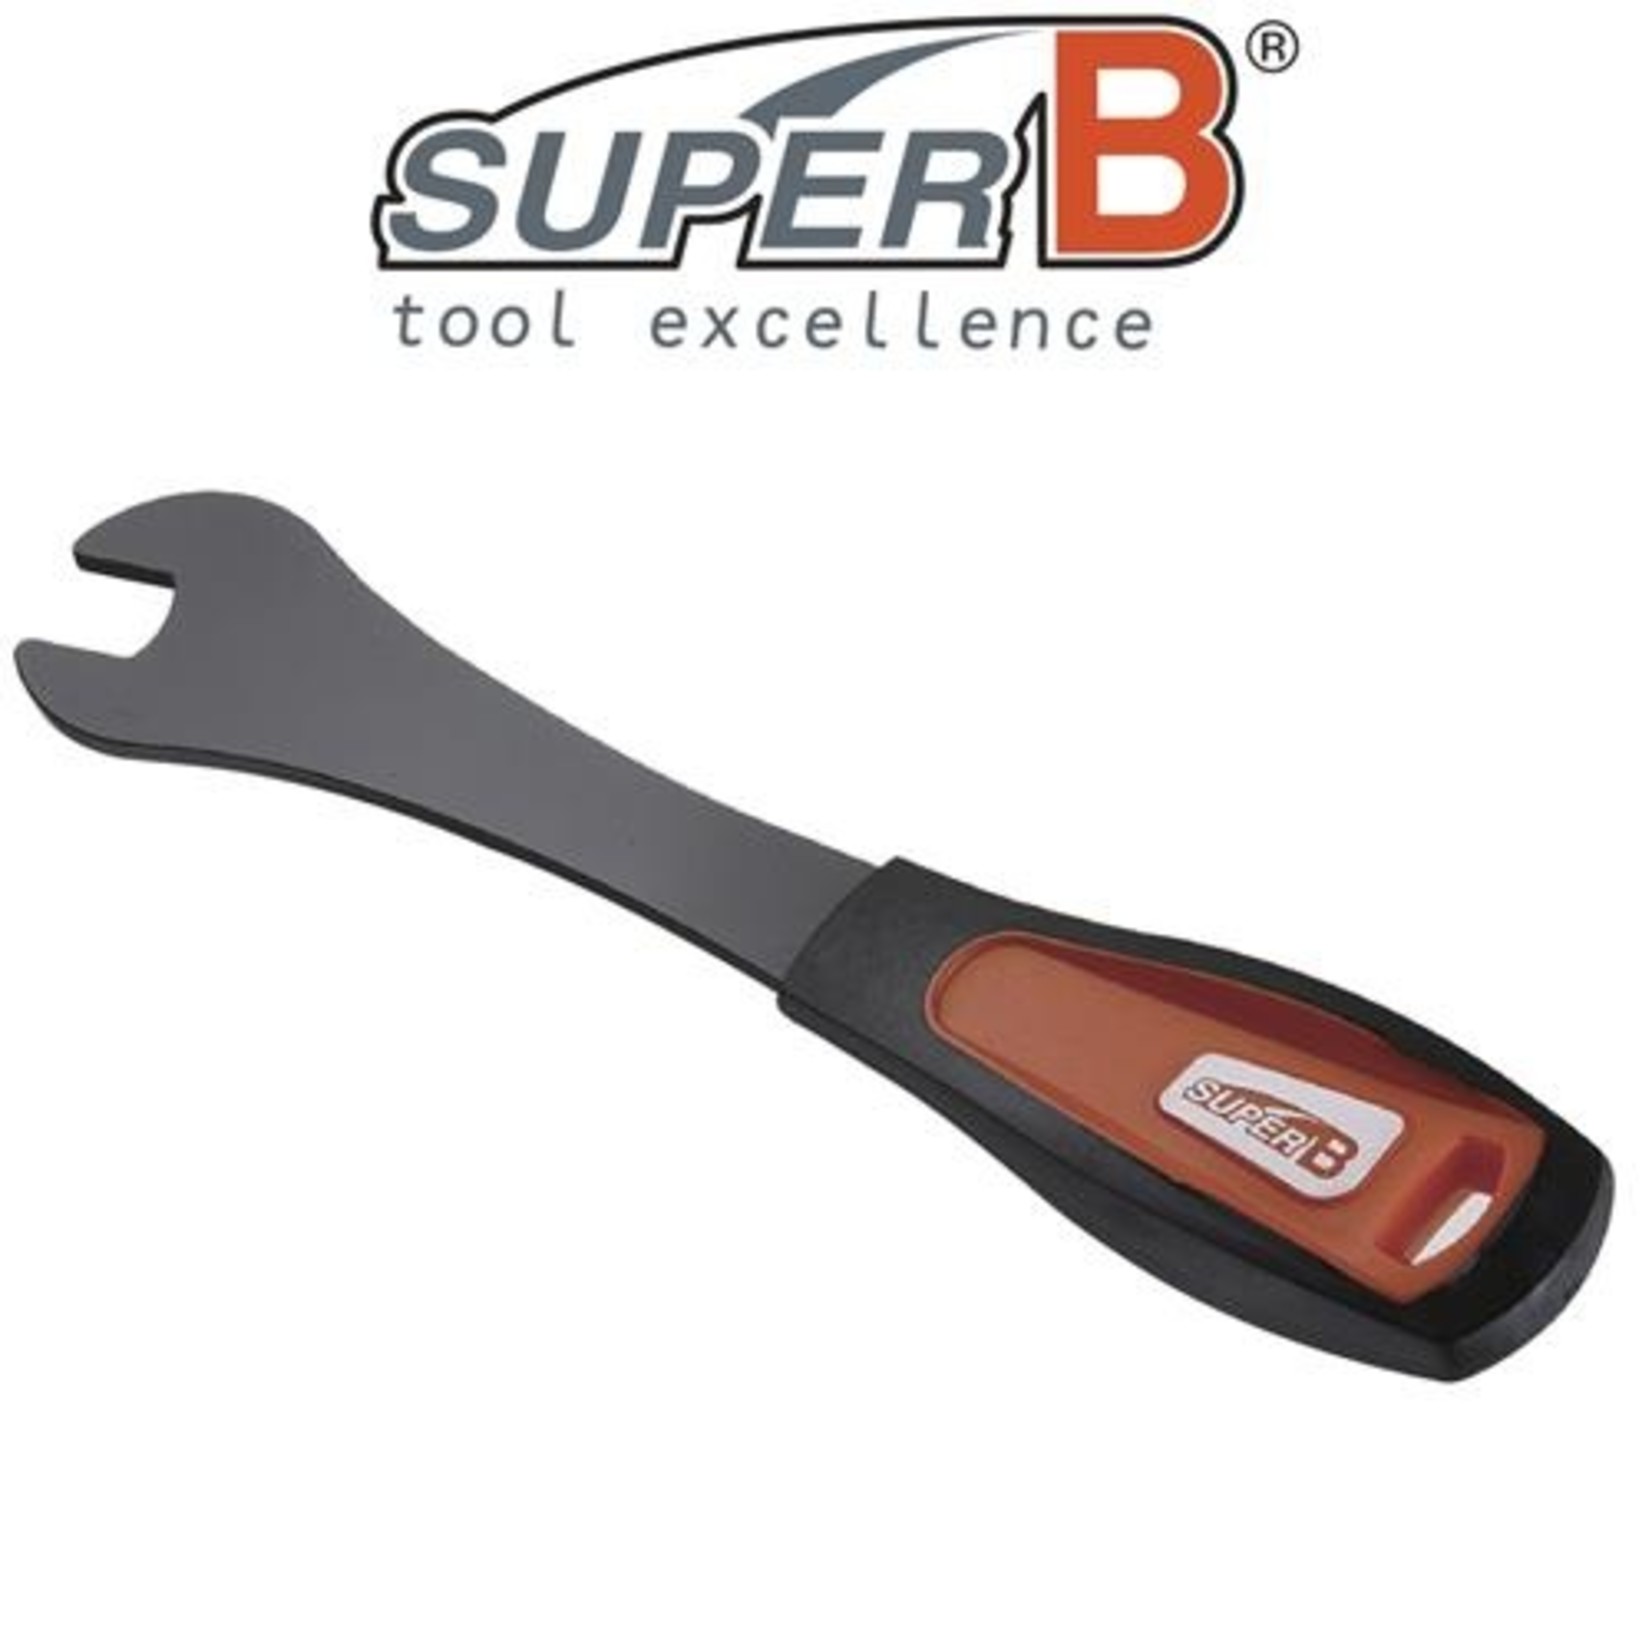 Super B SuperB Bike/Cycling Pedal Wrench - Bike Tool